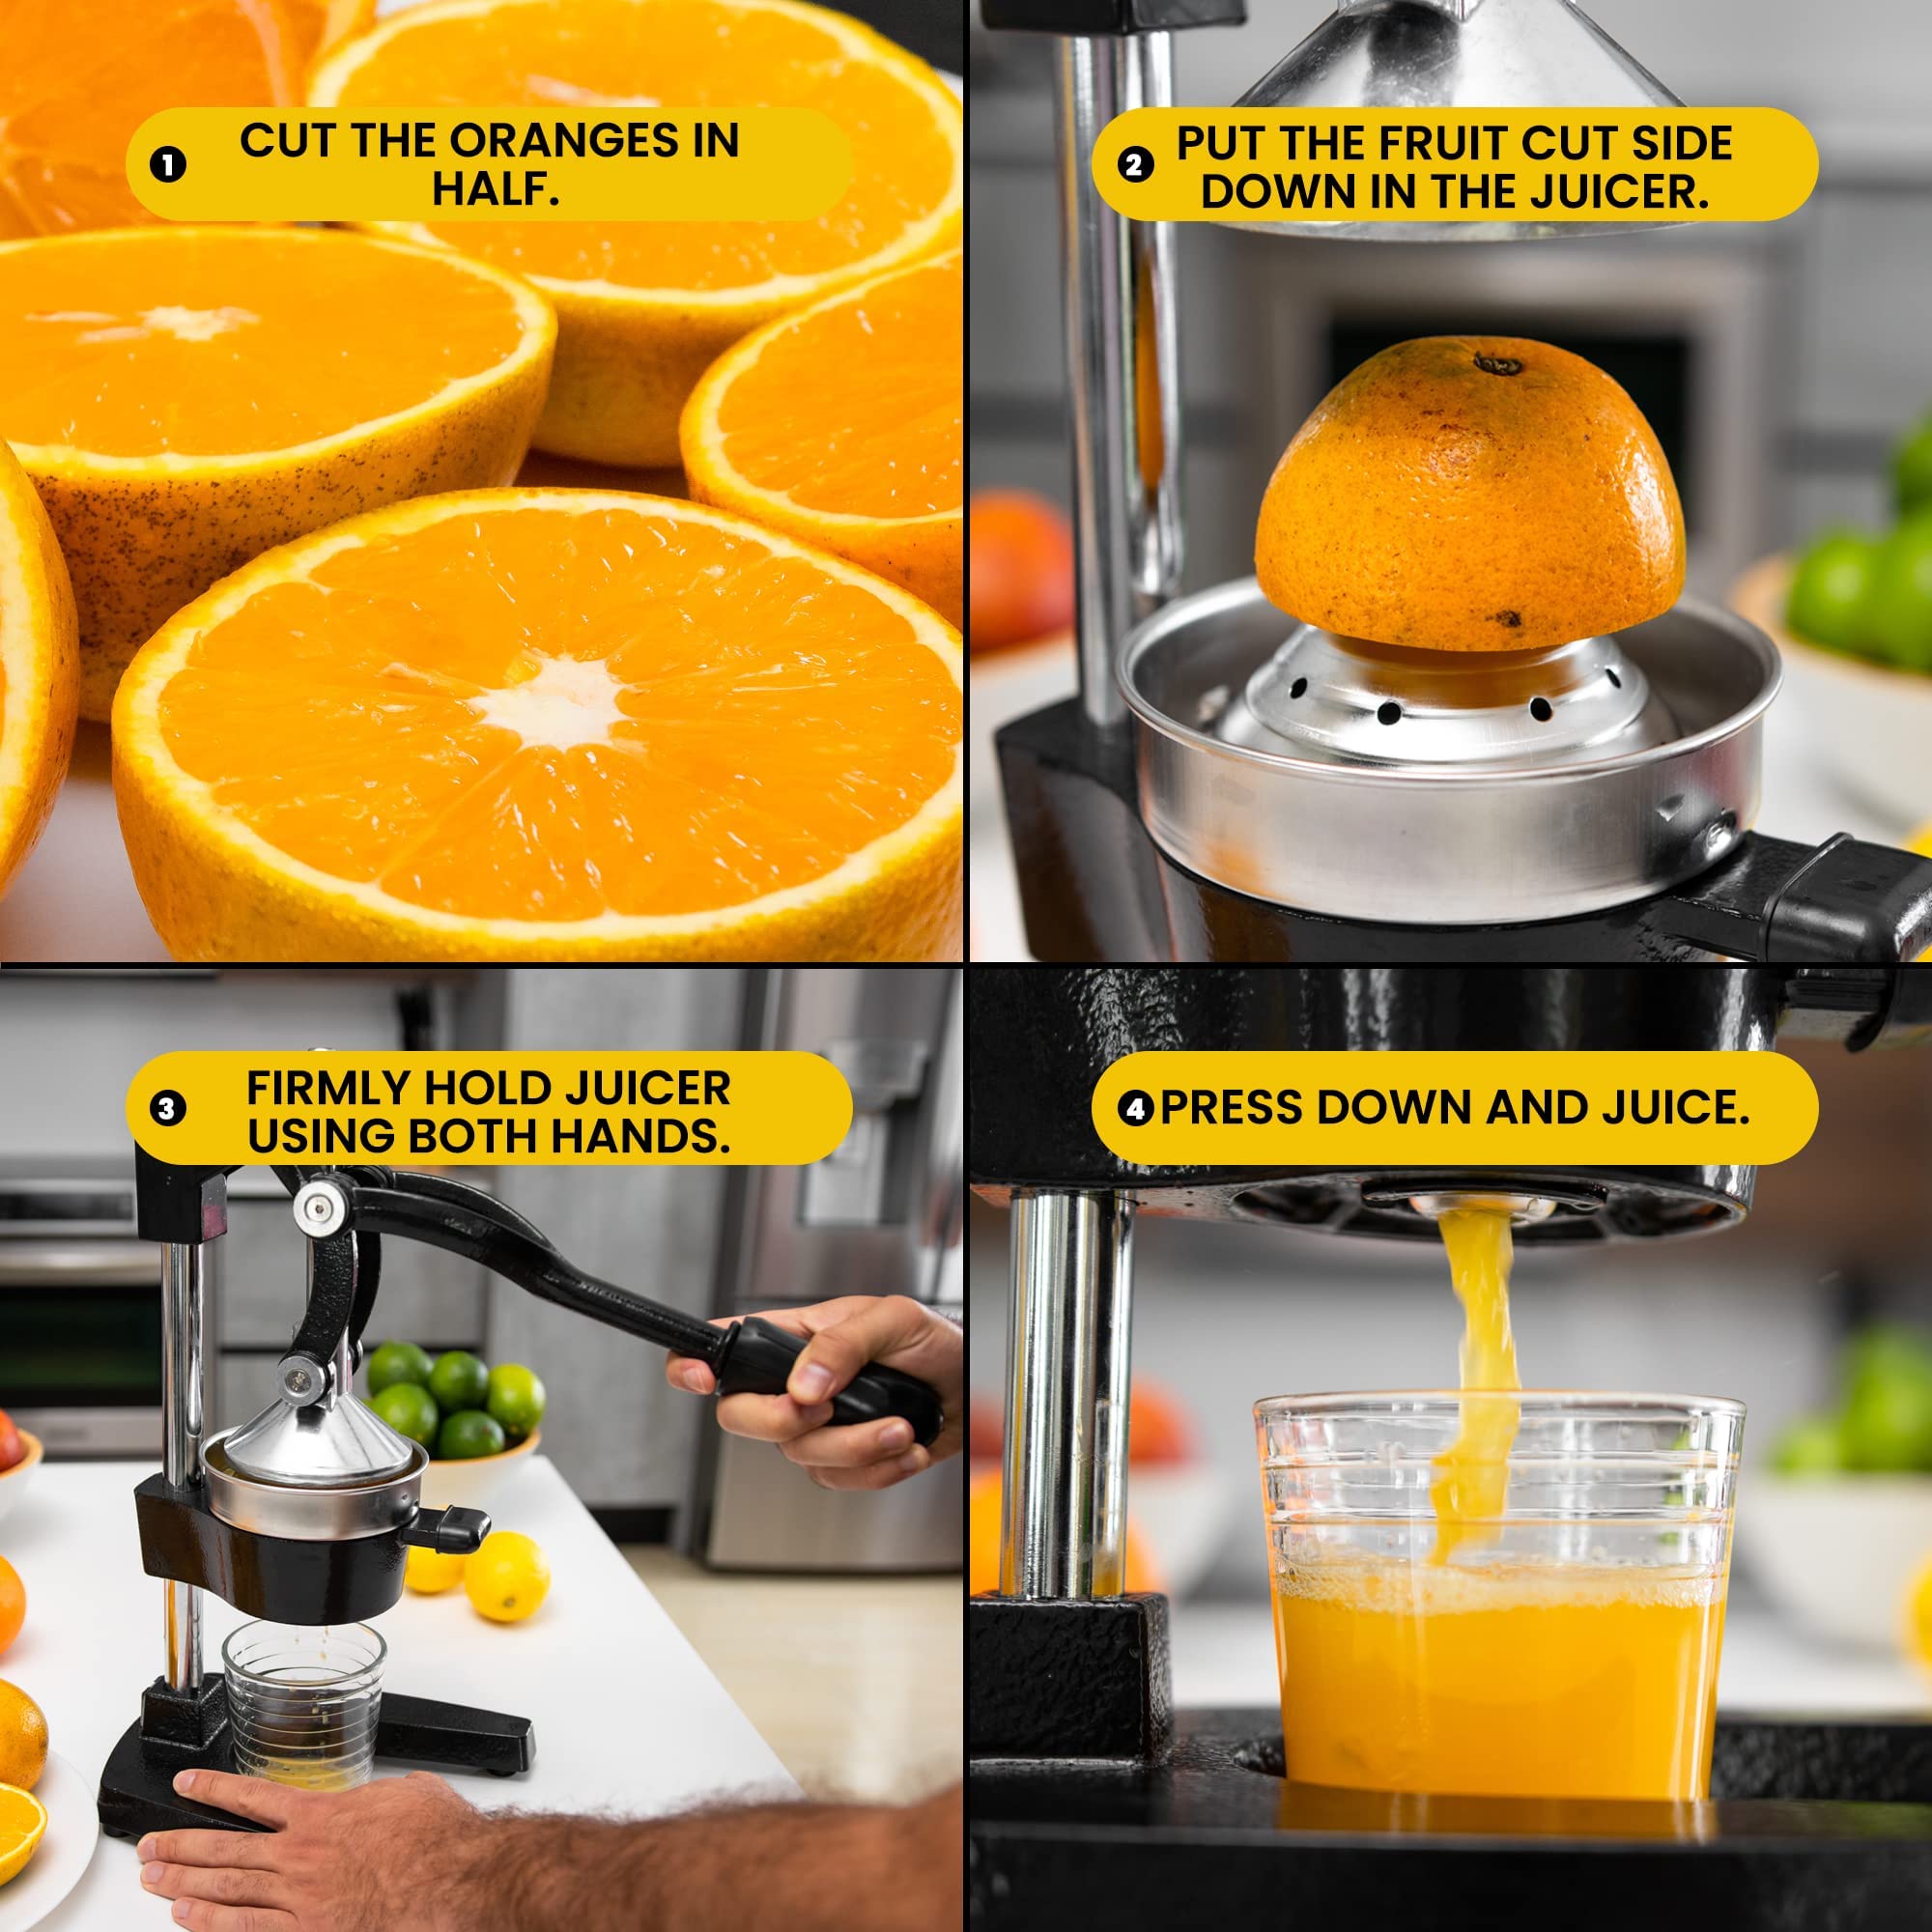 VIO Commercial Citrus Juicer Hand Press Manual Citrus and Orange Squeezer, Premium Quality Heavy Duty Manual Orange Juicer and Lime Squeezer Press Stand BLACK